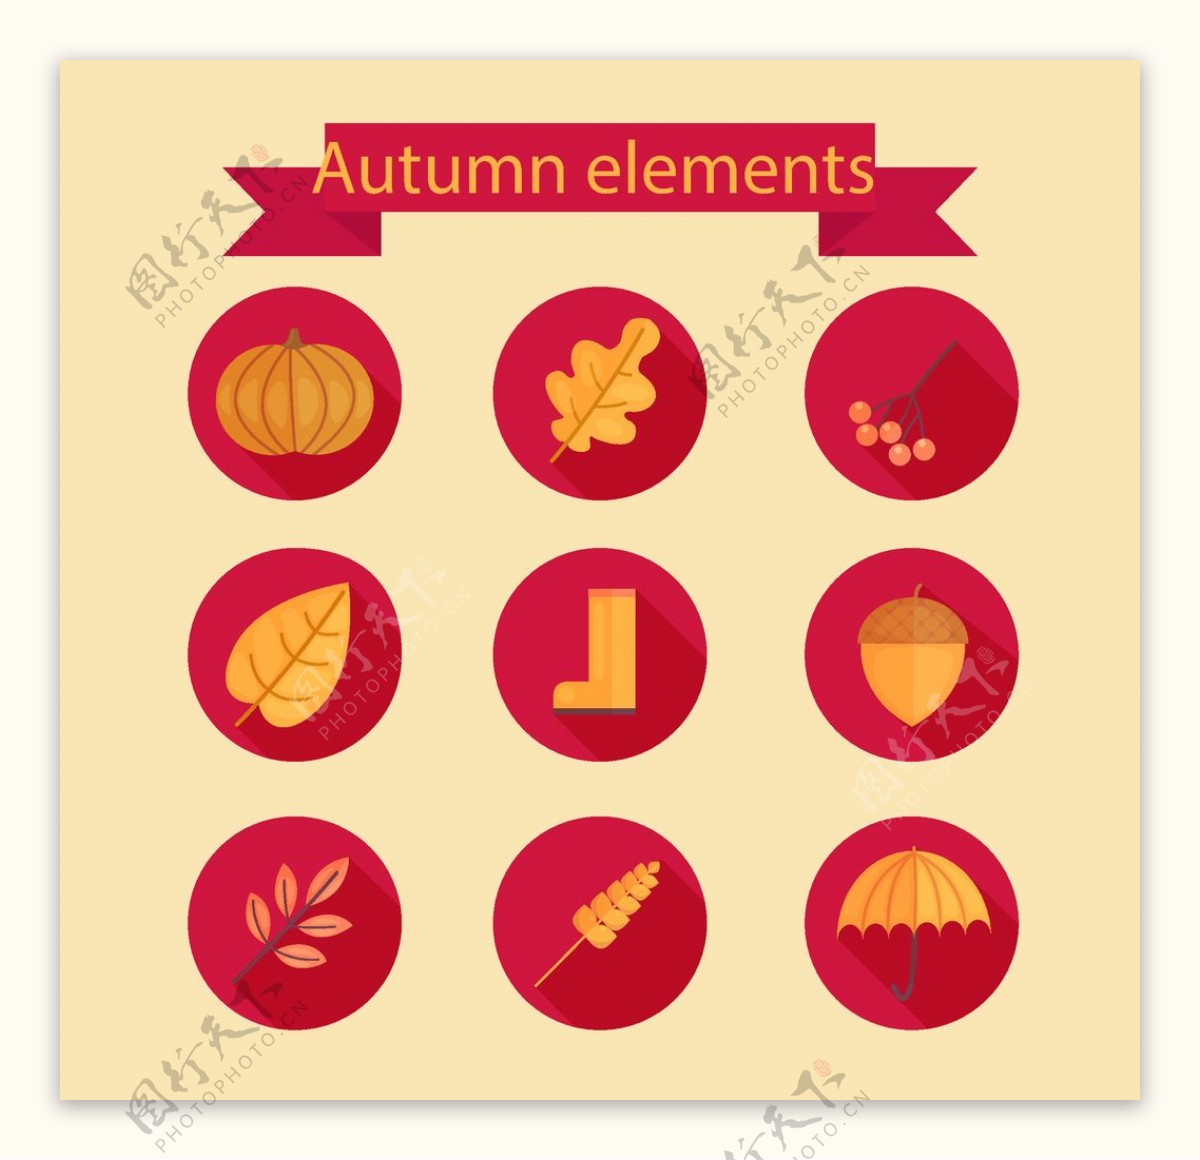 秋季元素图标